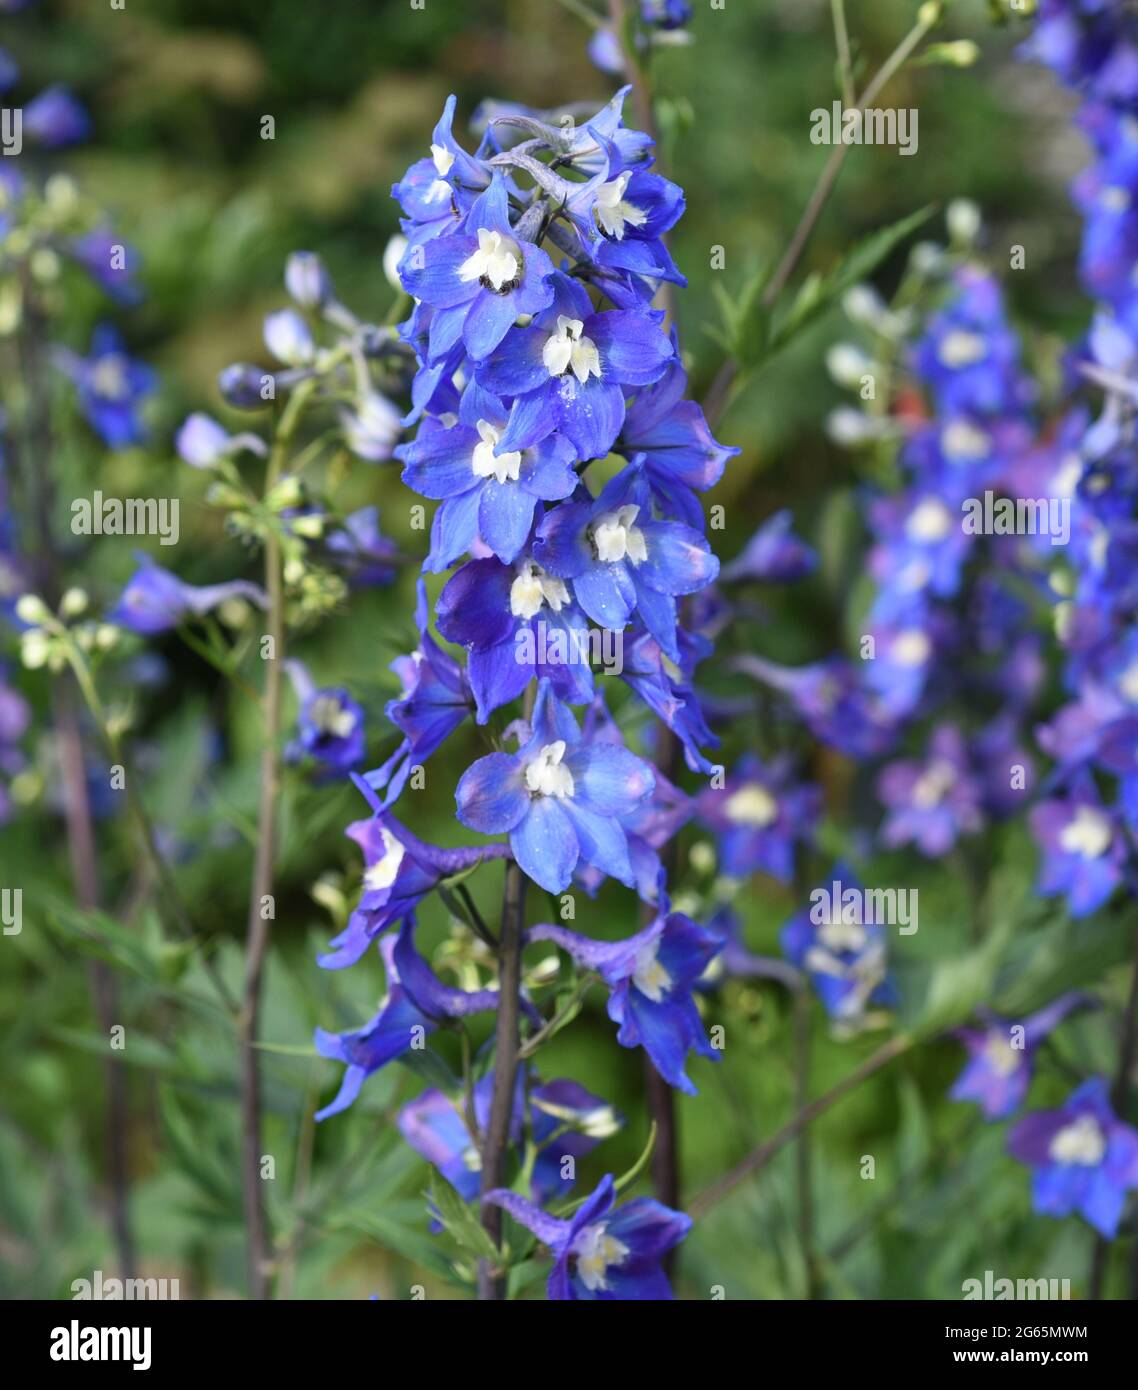 Rittersporn, Delphinium elatum, ist eine schoene Staudenpflanze mit blauen Blueten. Larkspur, Delphinium Elatum, è una bella pianta perenne con b Foto Stock